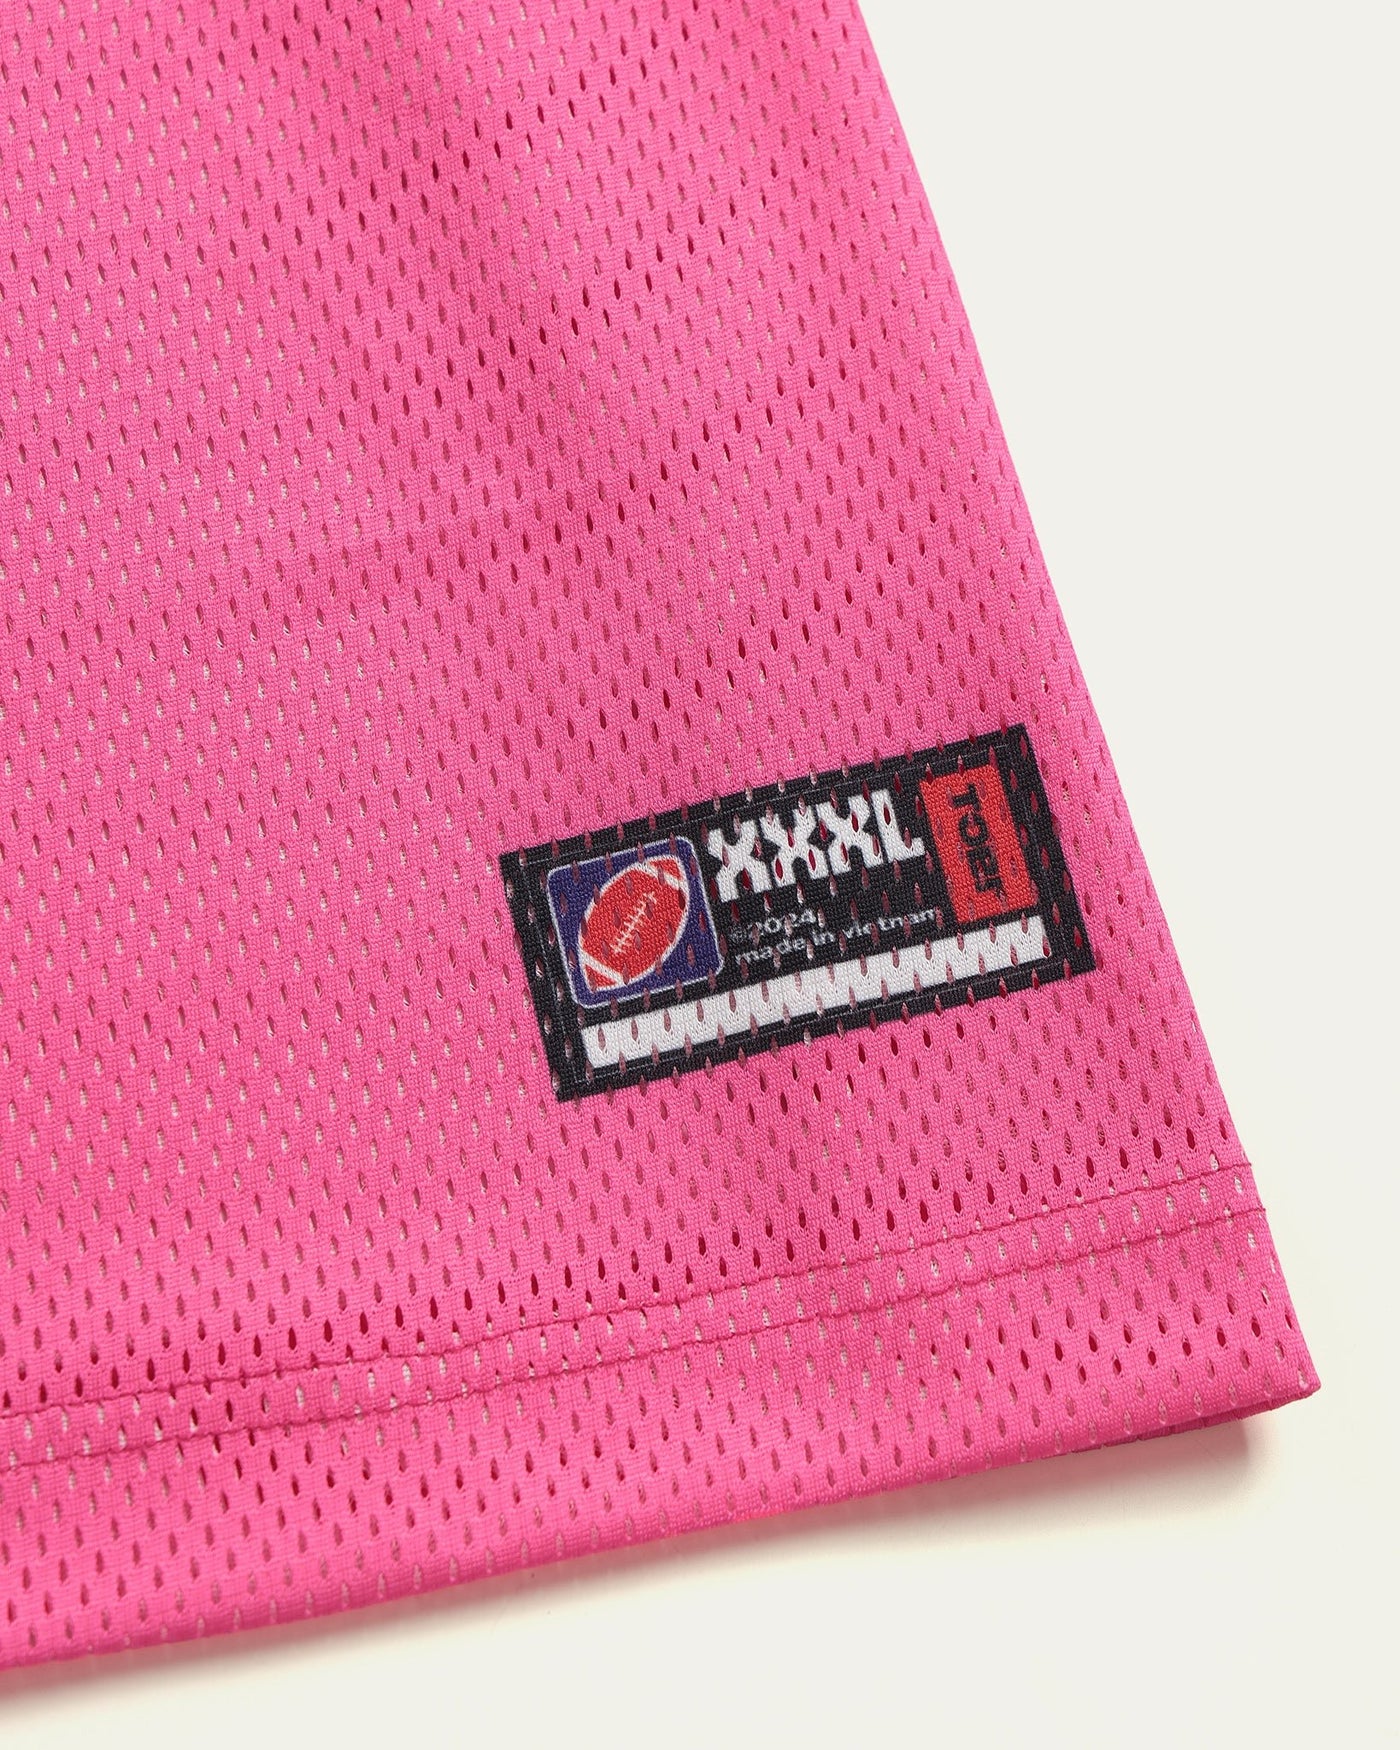 TOBI® NFL Regular Jersey - Pink - TOBI